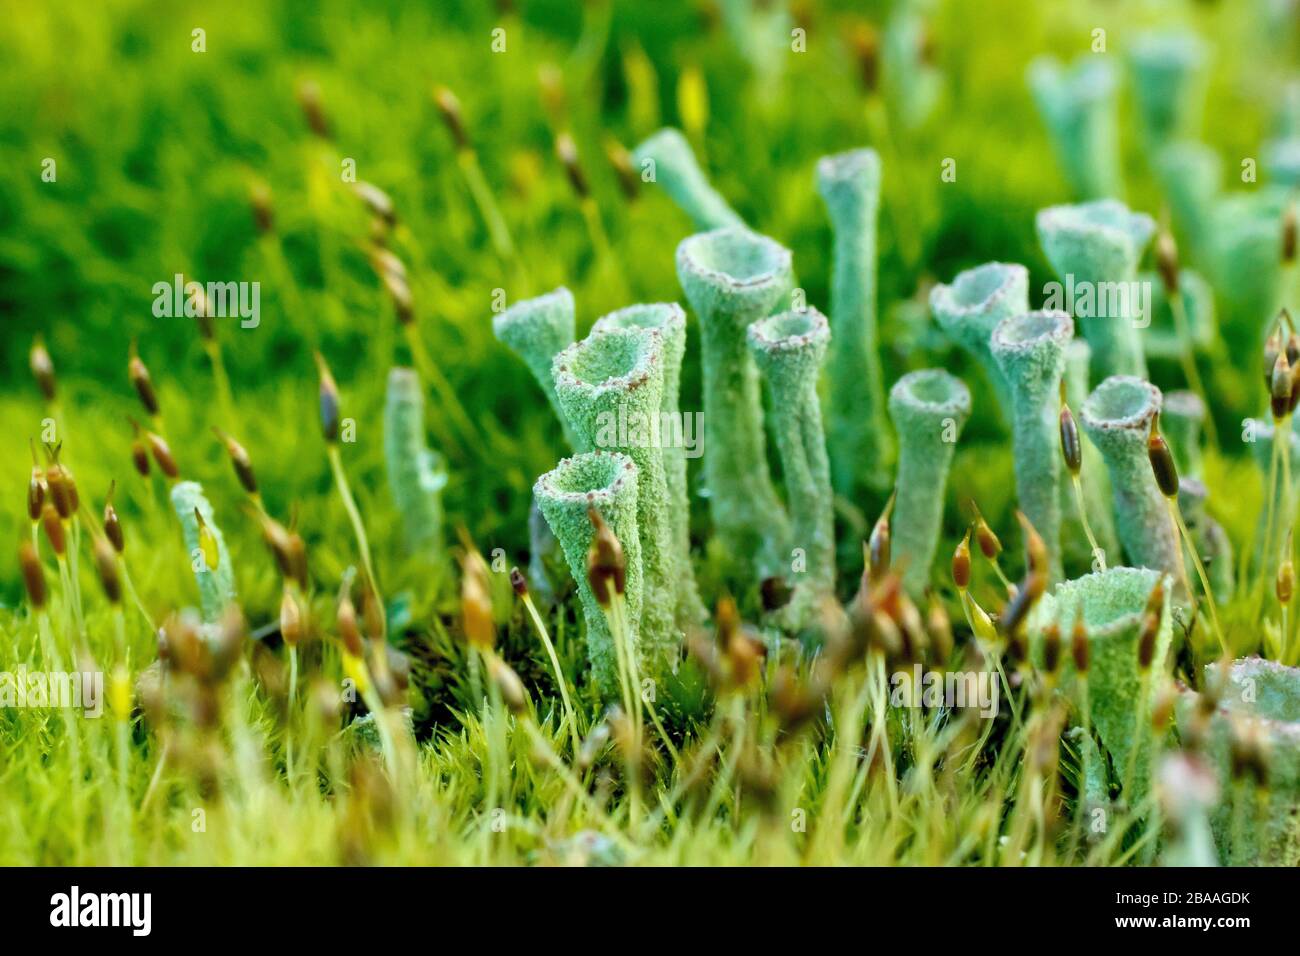 Nahaufnahme zeigt Detail einer grünen gestielten Flechte, höchstwahrscheinlich Cladonia Fimbriata, die durch das Moos auf einem Fencepost wächst. Stockfoto